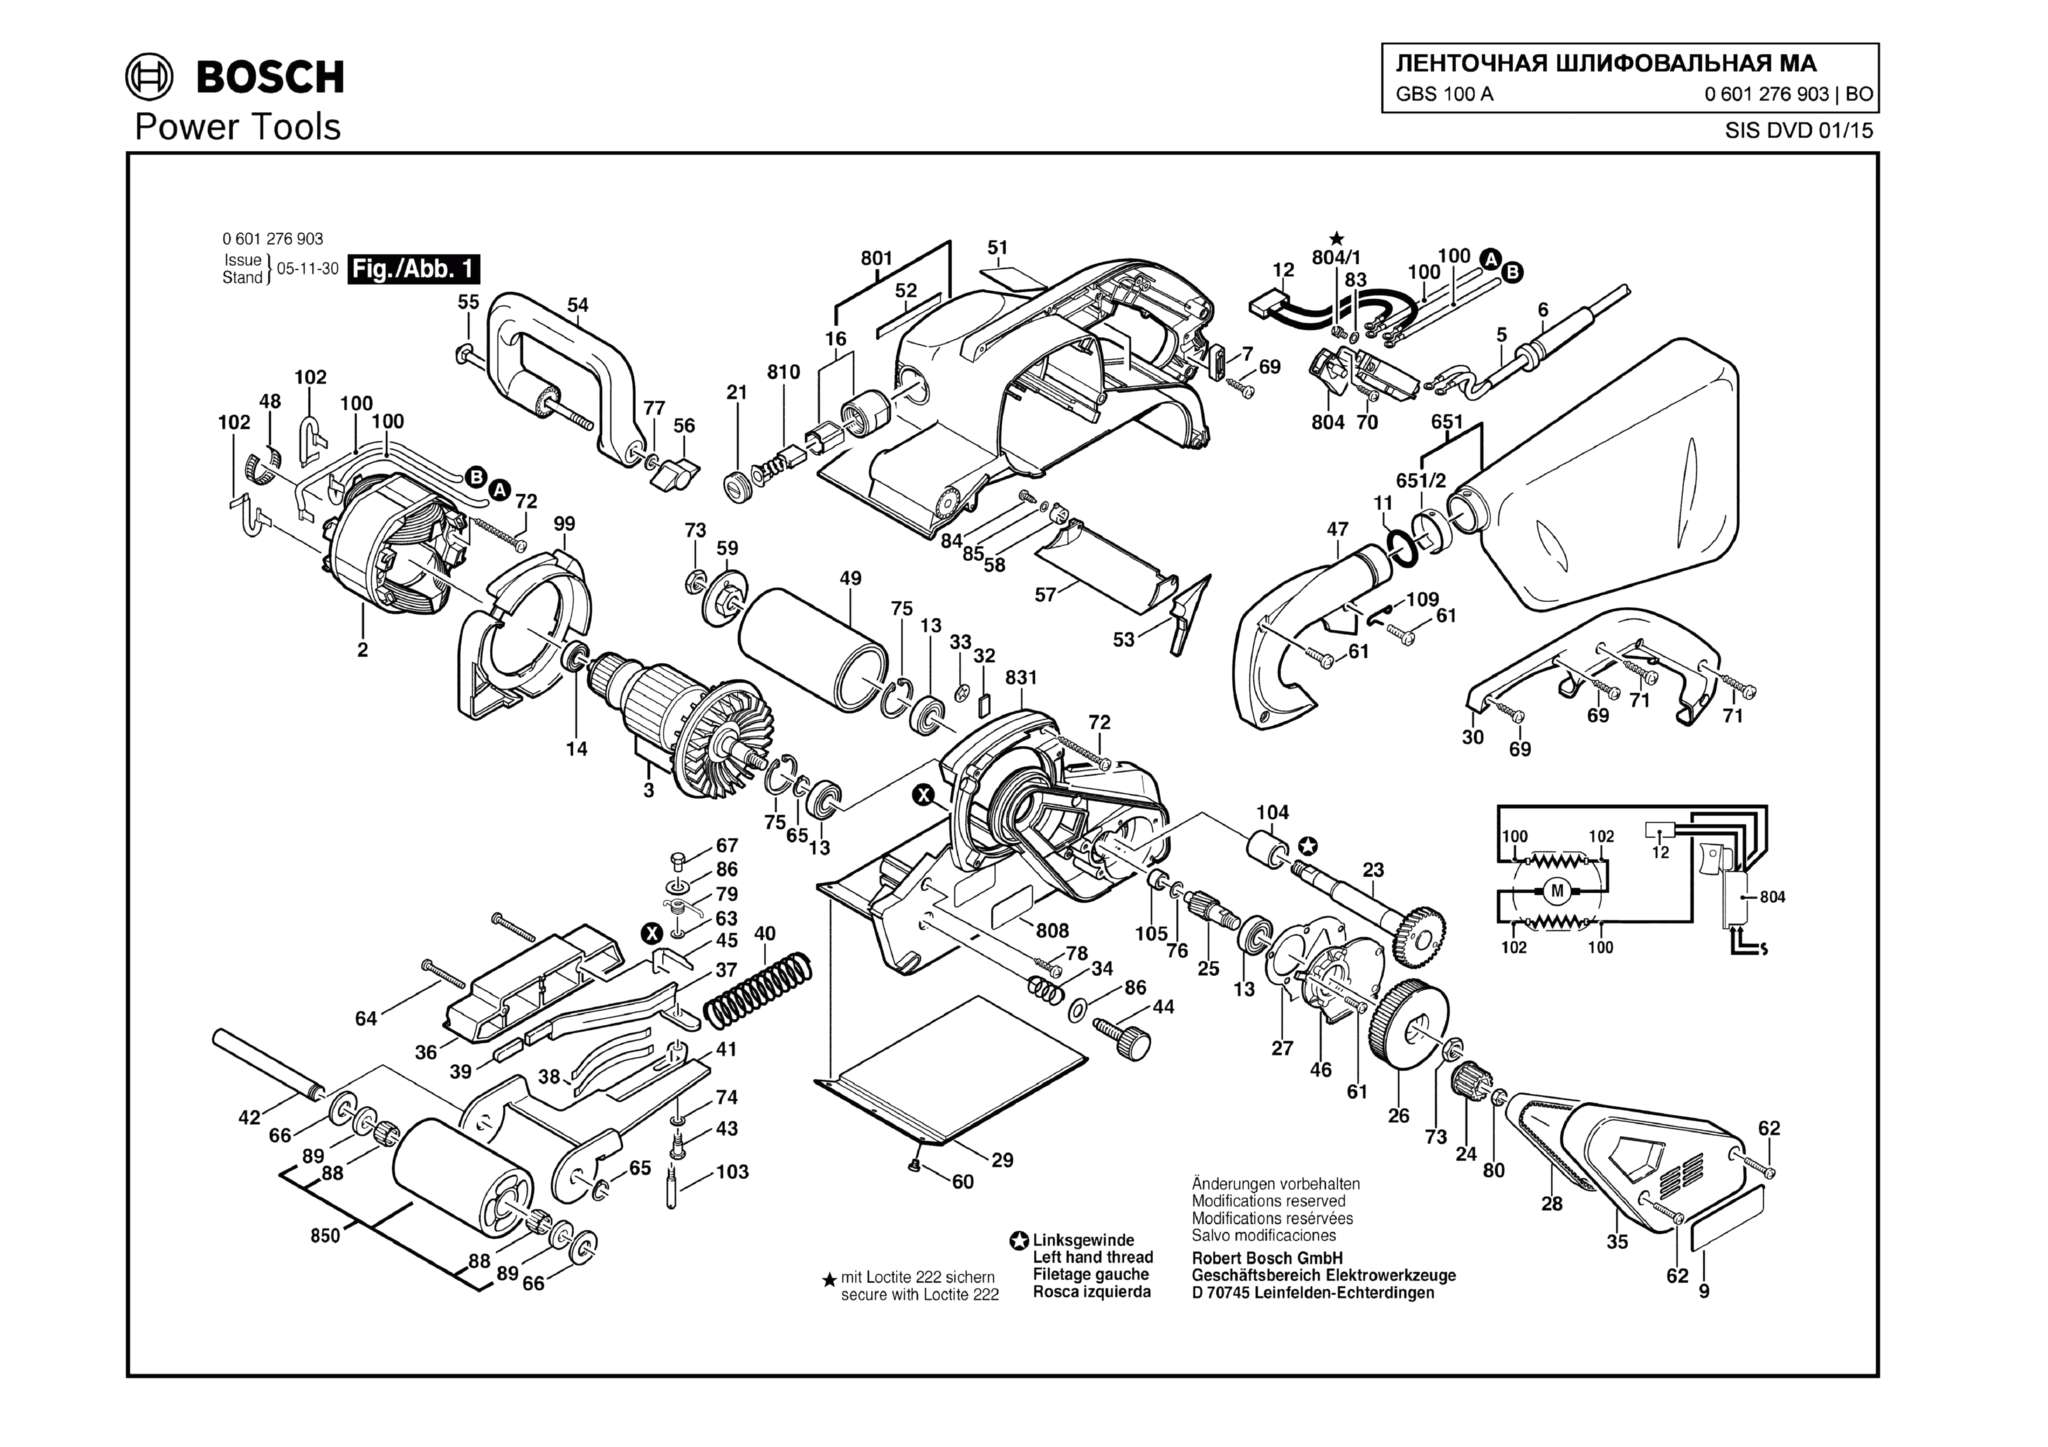 Запчасти, схема и деталировка Bosch GBS 100 A (ТИП 0601276903)